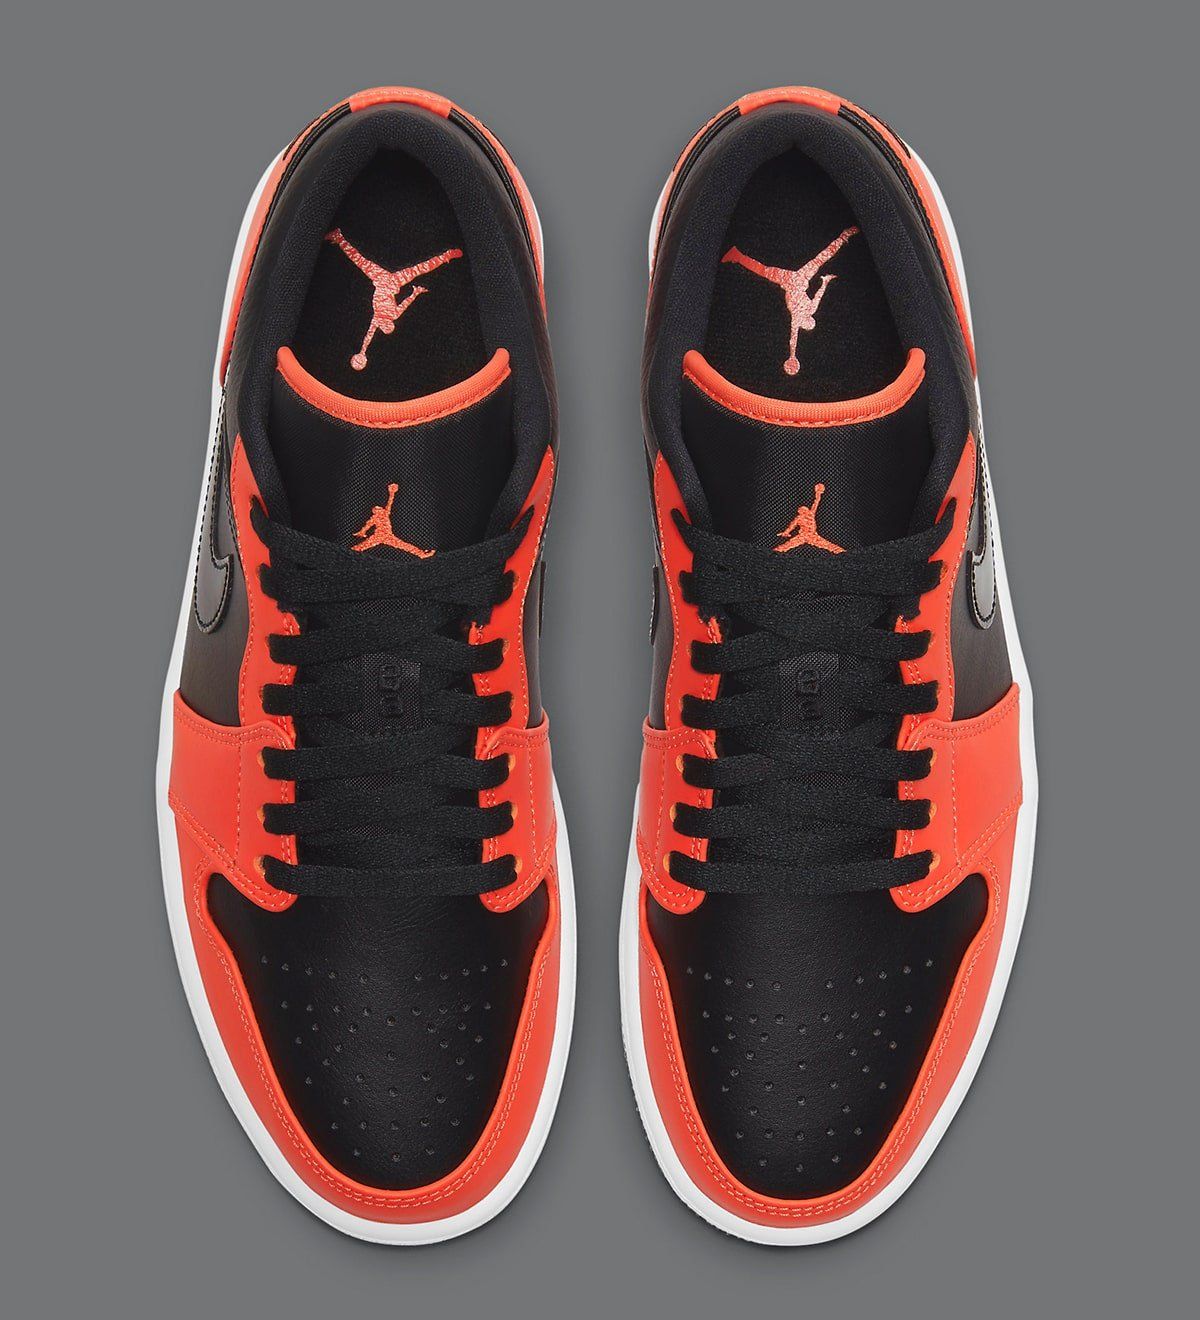 Air Jordan 1 Low Appears In Black And Orange House Of Heat